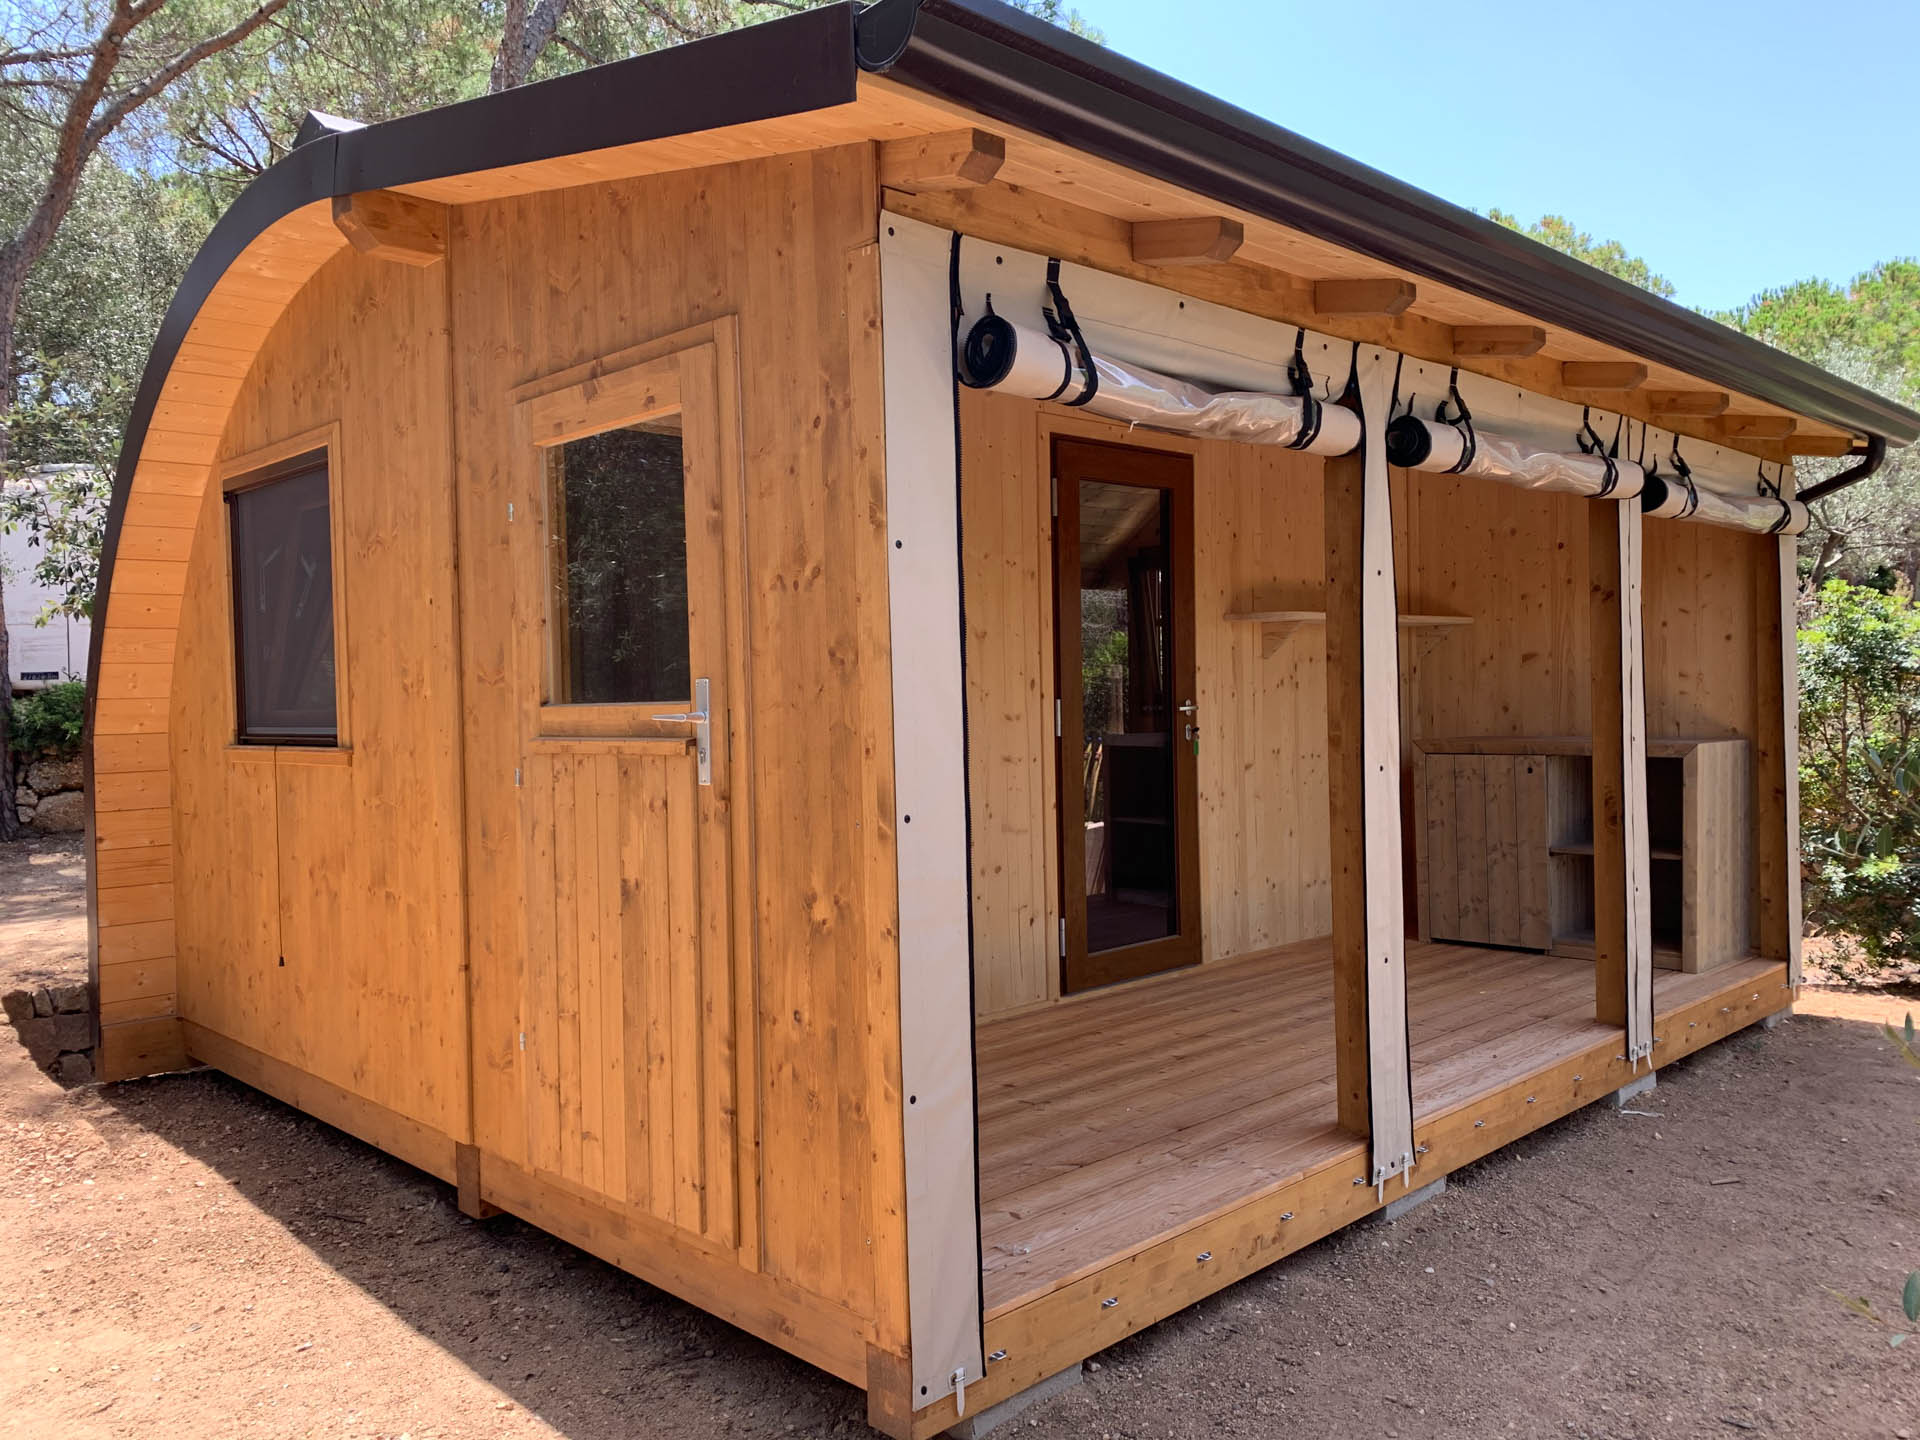 Valorizza il tuo campeggio con l'esclusivo Arco camping Pod e la sua veranda esterna. Un mix sorprendente di design innovativo e relax all'aria aperta, offrendo agli ospiti un'esperienza accogliente e unica immersa nella bellezza naturale."